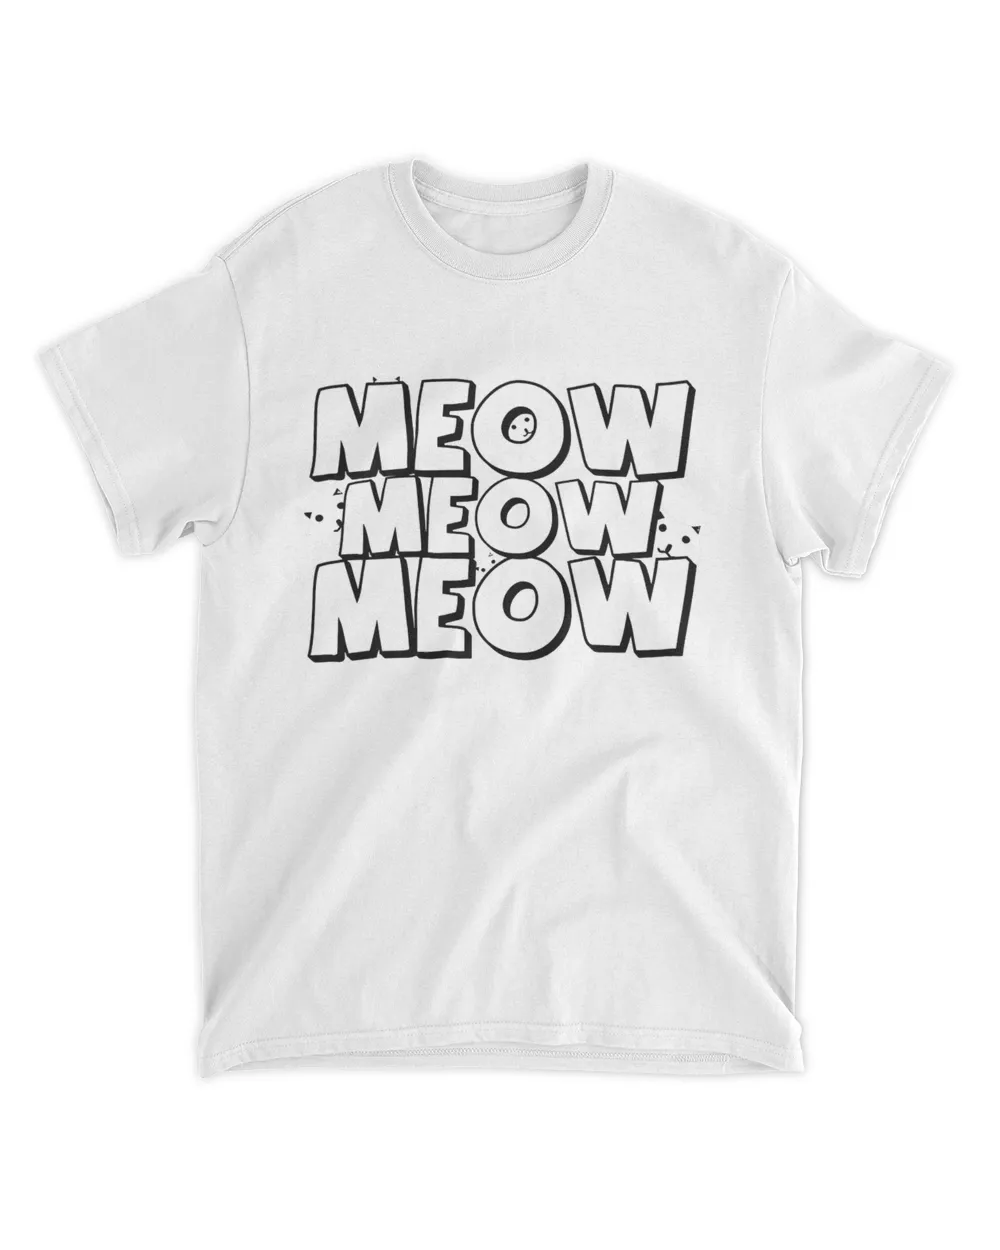 Meow Meow Meow Shirt